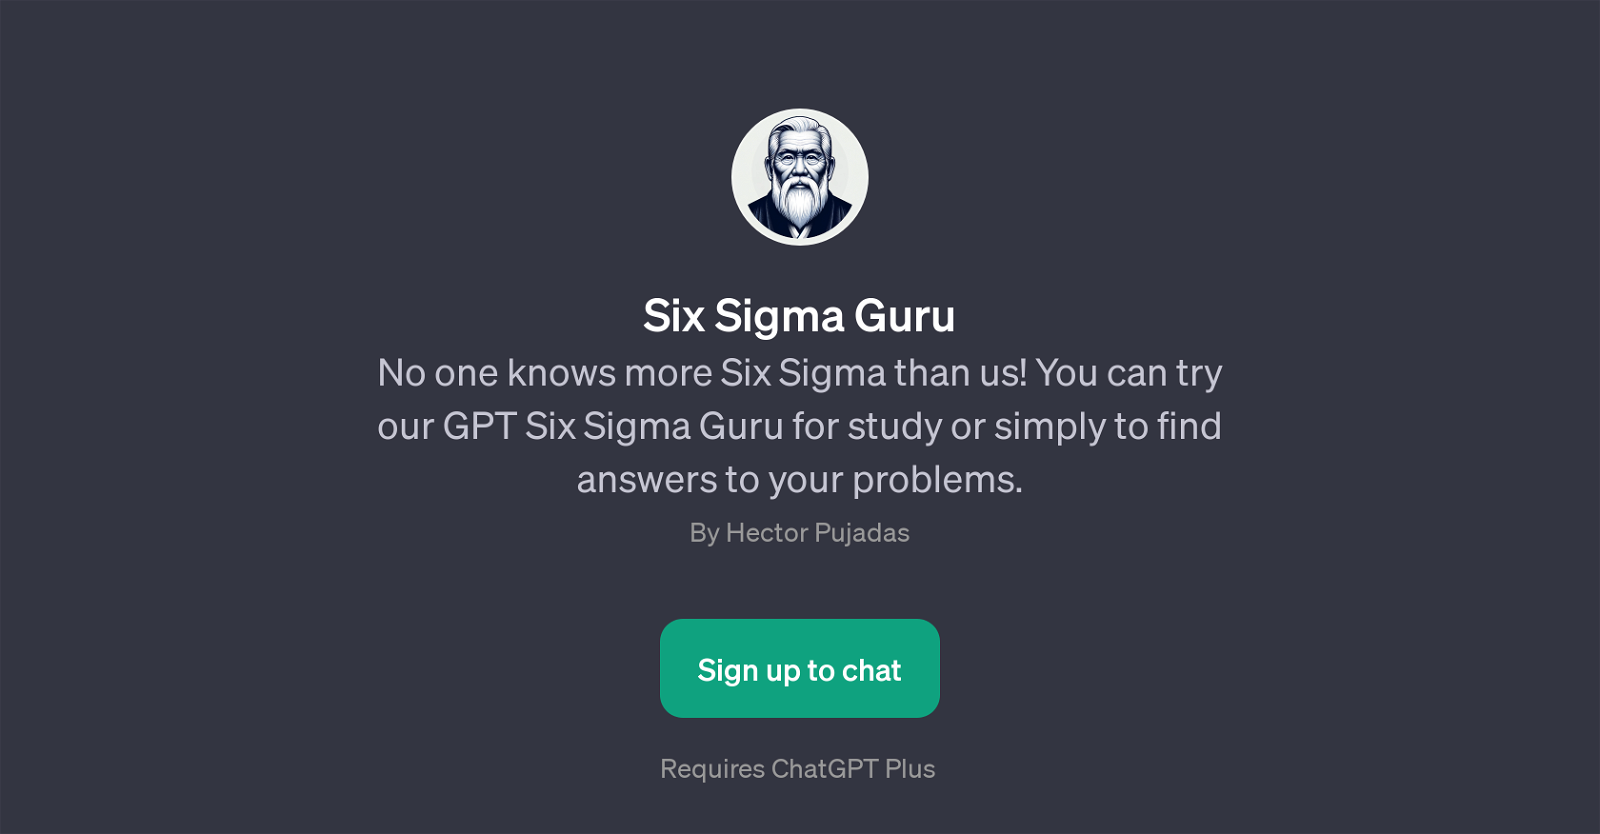 Six Sigma Guru website